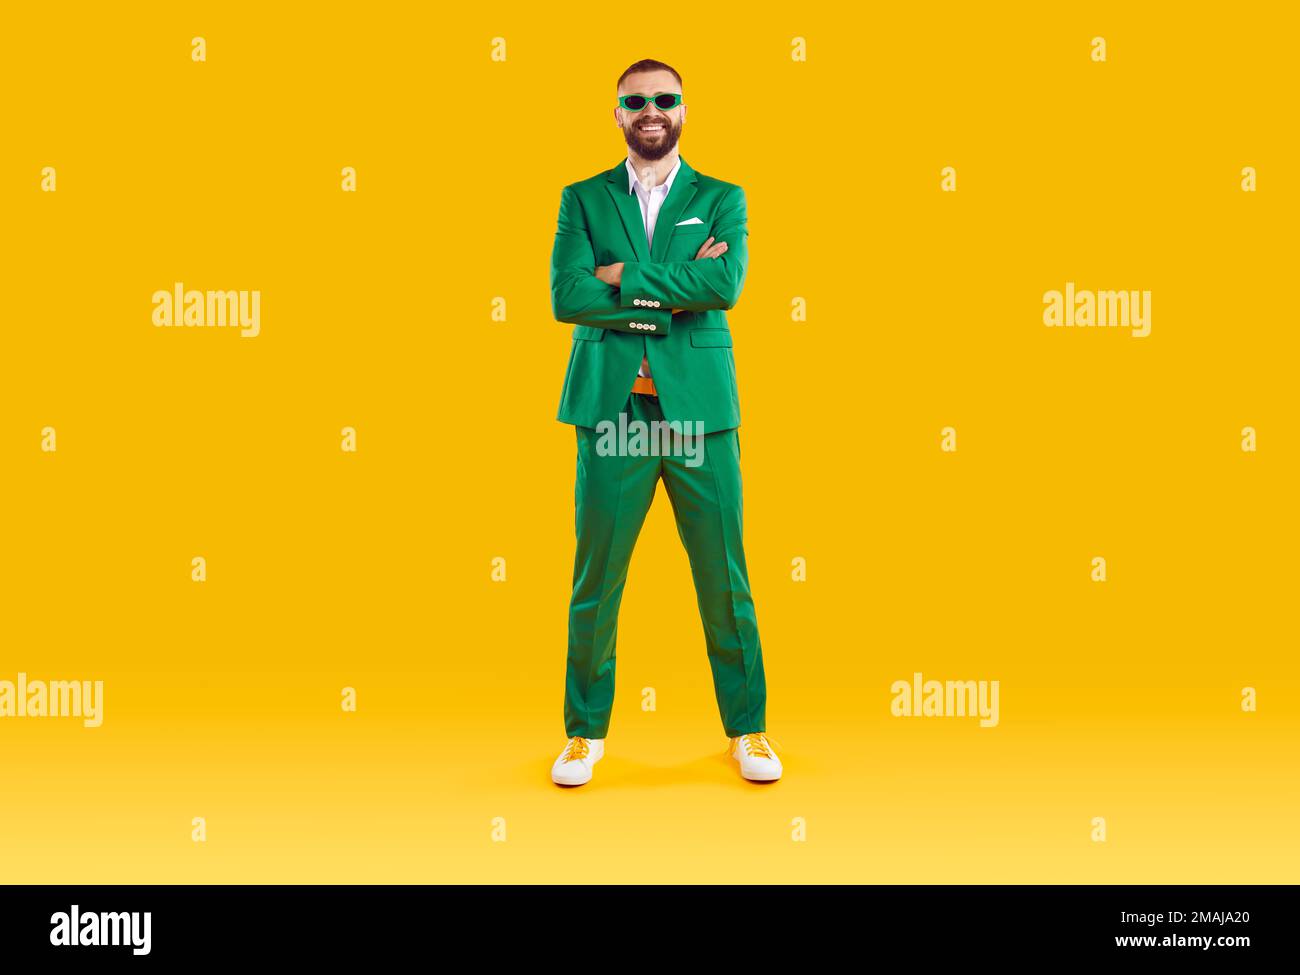 Porträt eines fröhlichen, coolen und fröhlichen Mannes in grünem Anzug und Sonnenbrille der gleichen Farbe. Stockfoto